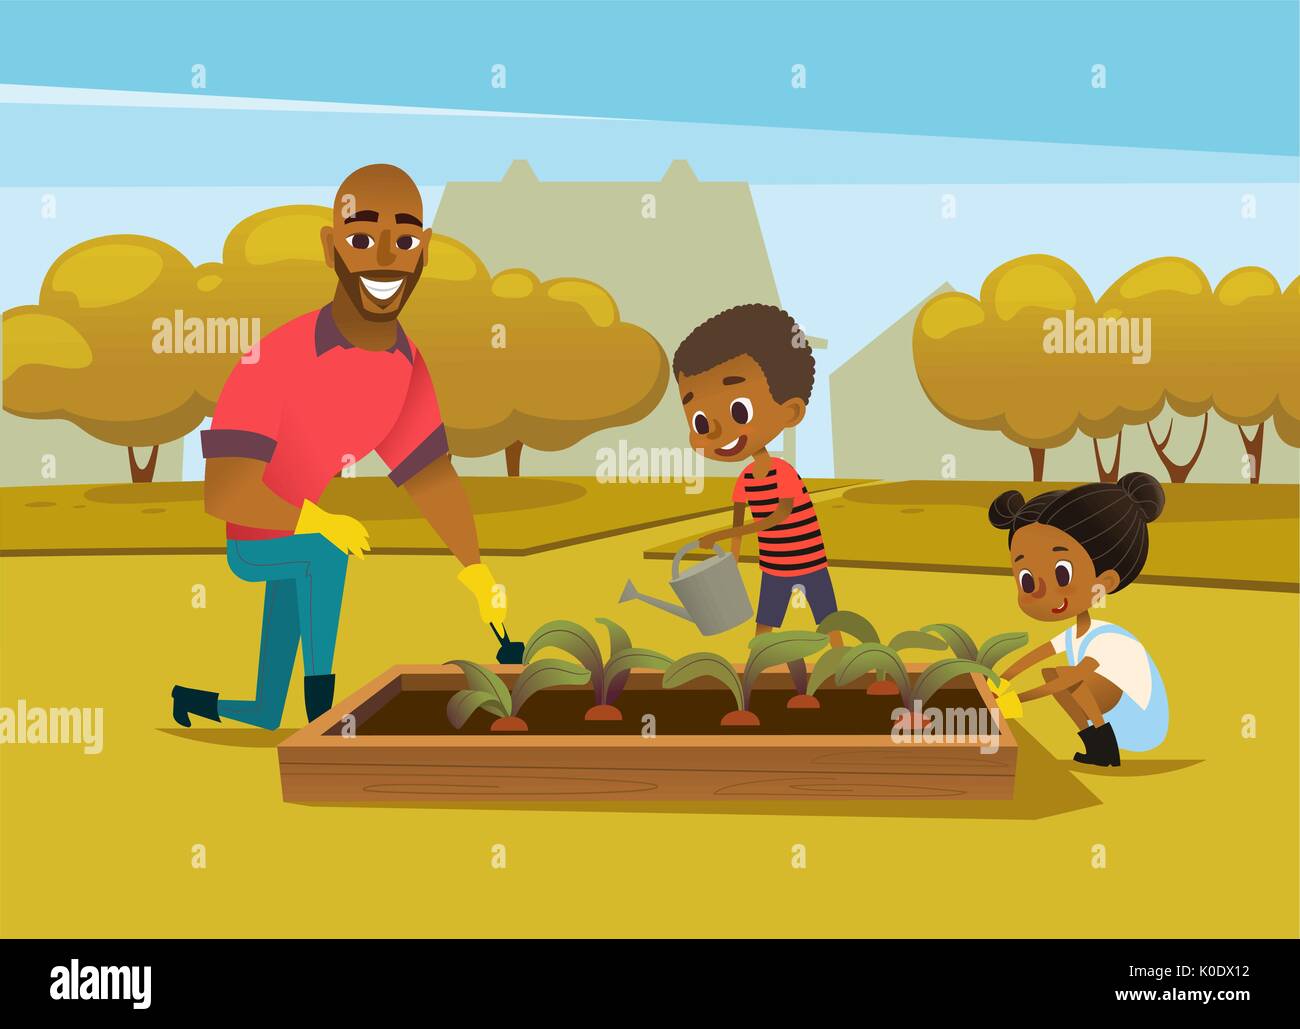 Fröhliche afrikanischen amerikanischen Vater und zwei Kindern in Gummistiefel angezogen kultivieren Gemüse wächst im Bett gegen Bäume auf Hintergrund. Konzept der Aktivitäten für die ganze Familie im Garten. Vector Illustration. Stock Vektor